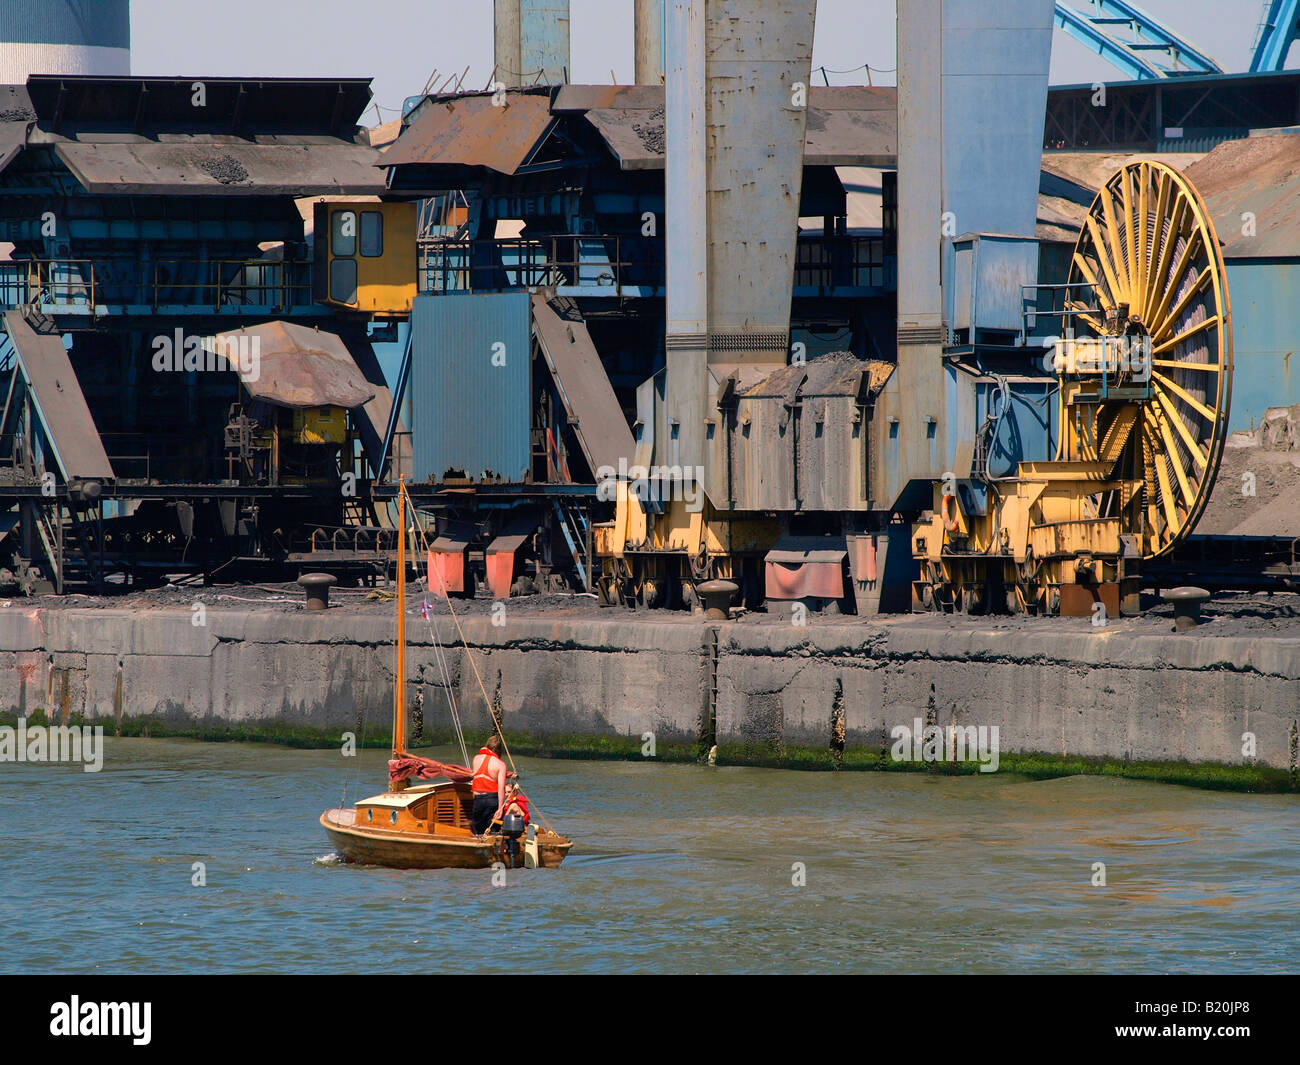 En bois vintage petit bateau à voile location de bateau à passé les énormes machines dans le port d'Anvers Flandre Belgique Banque D'Images